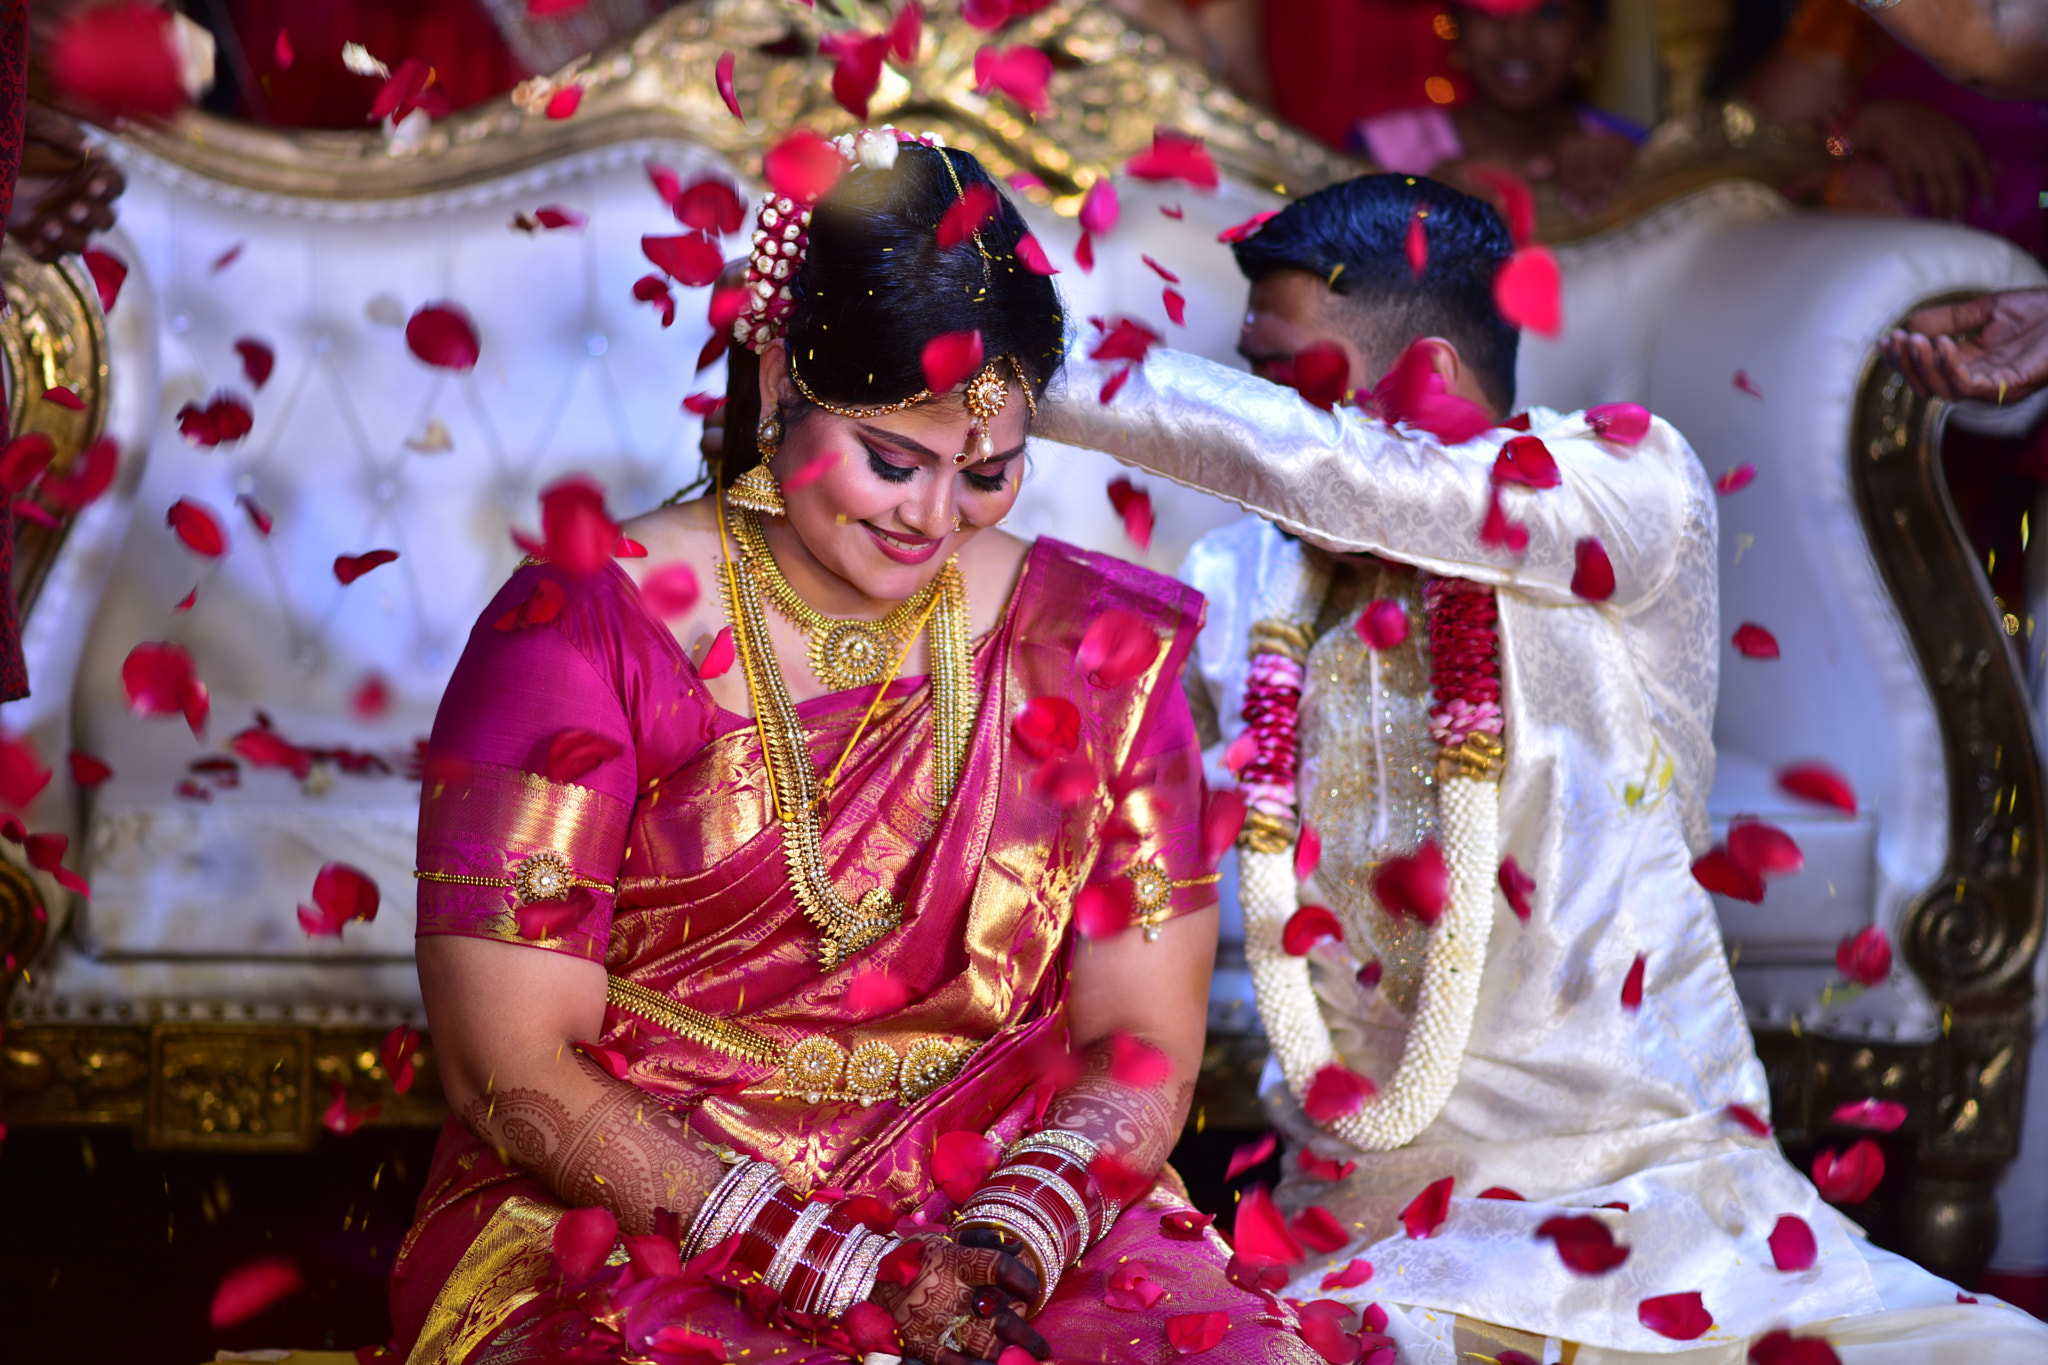 Nikon AF-S Nikkor 85mm F1.8G sample photo. Indian wedding photography